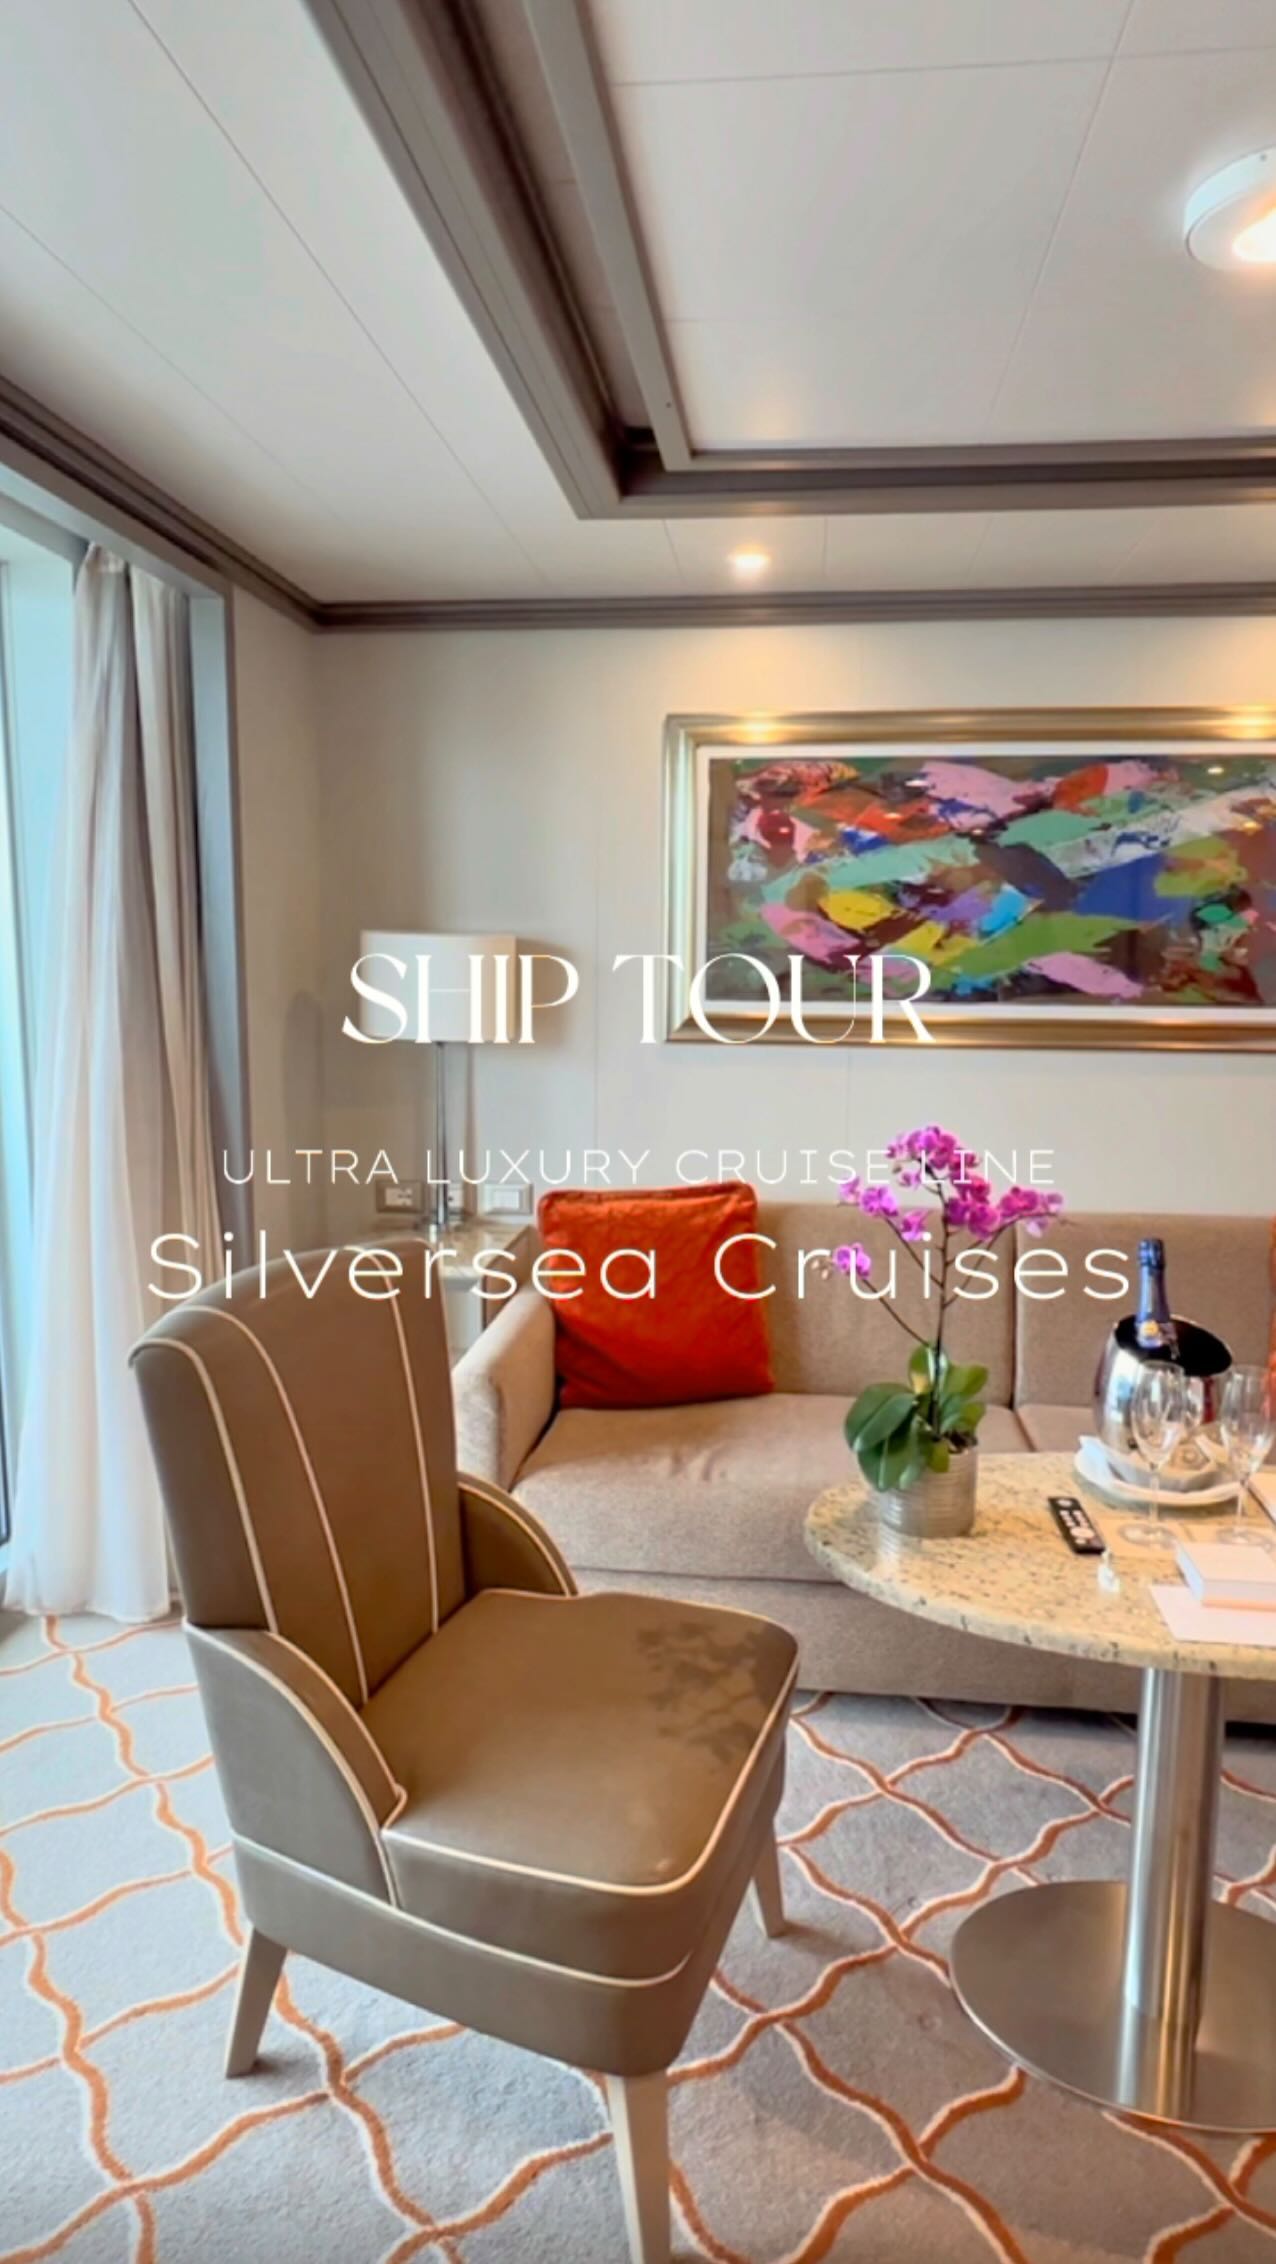 ⁡
【CRUISE SHIP TOUR🚢】
@silverseacruises
⁡
⁡
今年に入って注目しているクルーズ業界。
⁡
中でも”Ultra Luxury” と言われるクルーズ会社
「シルバーシークルーズ」の船内見学会にお邪魔しました！
⁡
⁡
現在、クルーズ業界では6〜7000人が乗船できる
20万トン以上の巨大シップもあるそうですが、
今回見せていただいたシルバーミューズは約4万トン、
乗客600名という小型船の部類。
⁡
業界唯一の全室バトラー付き。
全てのお部屋が海向きのスイートルーム仕様で
（巨大客船では窓がない内向きの価格を抑えたお部屋もある）
イメージとしては大型船のジュニアスイートのみ切り取って運行しているようなもの。
⁡
⁡
さらに、乗客と同じくらいのクルーが乗船しているのも、行き届いたパーソナライズサービスが受けられるポイントの一つ。
⁡
お食事にも定評があり、クルーズならではのオールインクルーシブ（一部チャージあり）をとことん楽しめそうでした！
⁡
客室は全室バスタブ付きで、
まるでラグジュアリーホテル。
⁡
ゆったり客室で過ごしながら、各寄港地までの移動も楽しめるクルーズはファンが多いことに納得です。
⁡
⁡
⁡
⁡
ストーリーにも書いたけれど、
お値段はカジュアル船の2〜30倍。
⁡
誰でも気軽に乗れるわけではないとしても、
その価値と魅力を知って乗船している方々との出会いも
きっとシルバーシーに乗る理由の一つになるんだろうな。
⁡
個人的には南極路線などもすごく気になるところ。。
⁡
2025年1月13日日本発、136泊30ヶ国59寄港地の世界一周クルーズもあるそう🫢
⁡
⁡
⁡
乗り物酔いが激しく、クルーズとは一生無縁…と思っていた私ですが、 @cruise_ism さんとのお仕事をきっかけに、クルーズ旅の魅力に誘惑されています。
⁡
直近でもう2回ほど船内見学にお邪魔する予定なので
またレポします📝
⁡
⁡
⁡
#クルーズイズム_船内見学会
#ラグジュアリークルーズ
#豪華客船
#オールインクルーシブ
#シルバーシー 
#シルバーシークルーズ#silversea
#silvermuse #luxurycruise